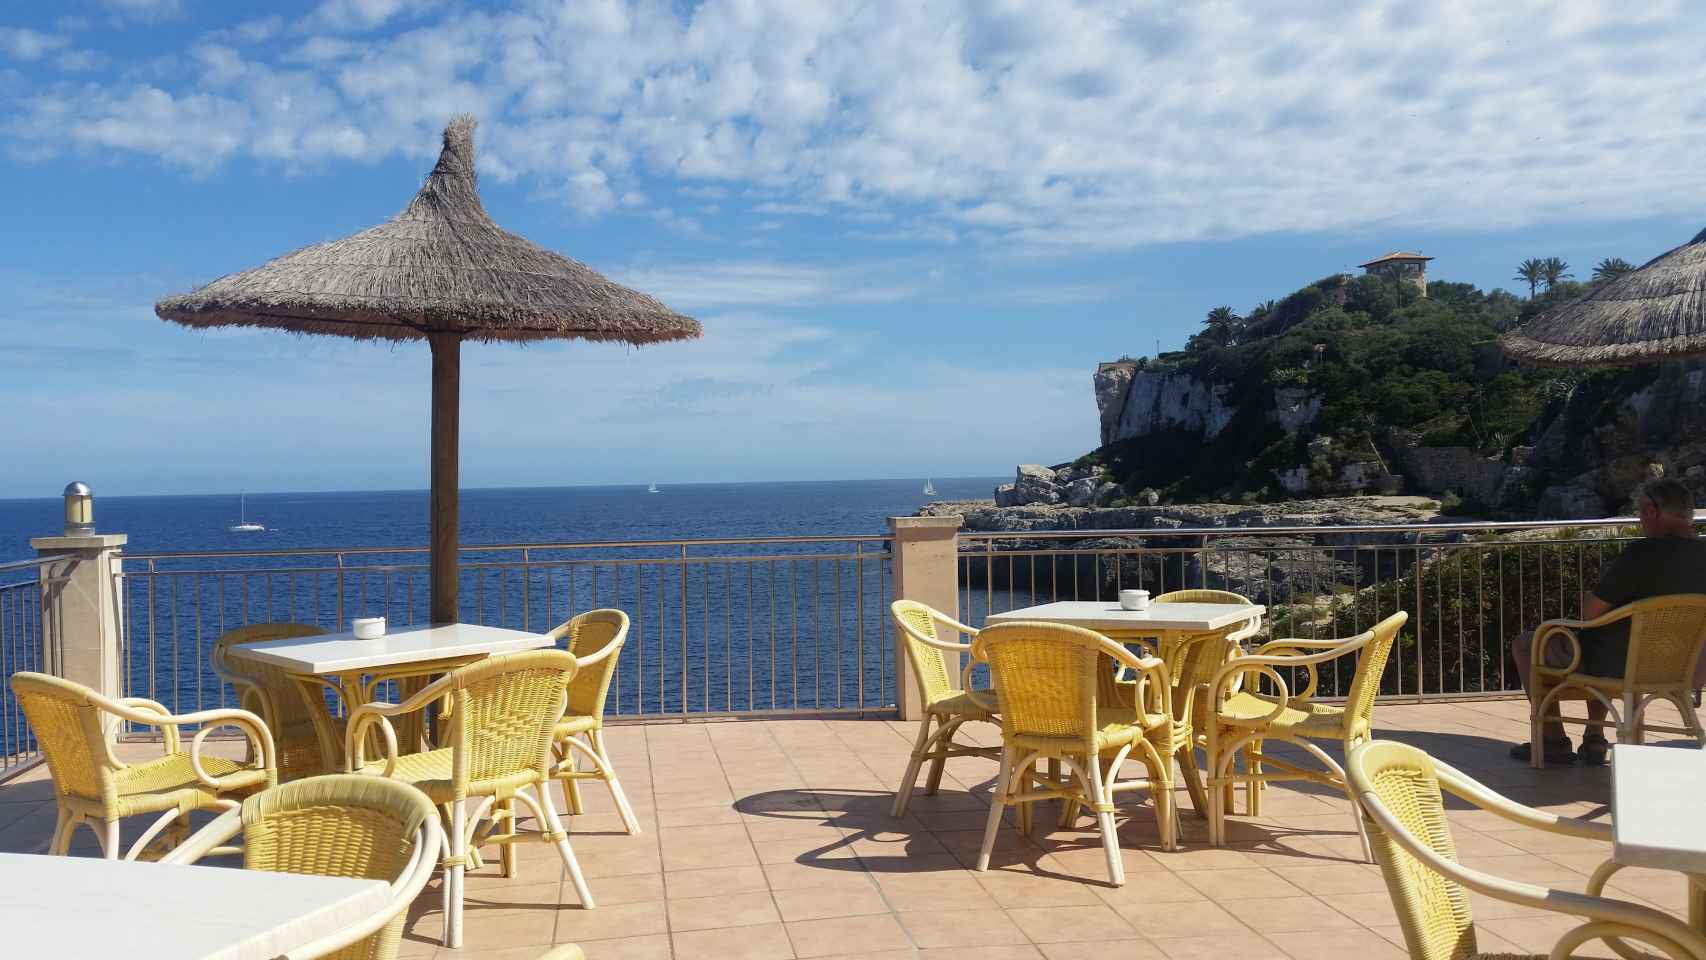 Las provincias que más han crecido en bares con terraza son Tarragona, La Palma y Alicante.